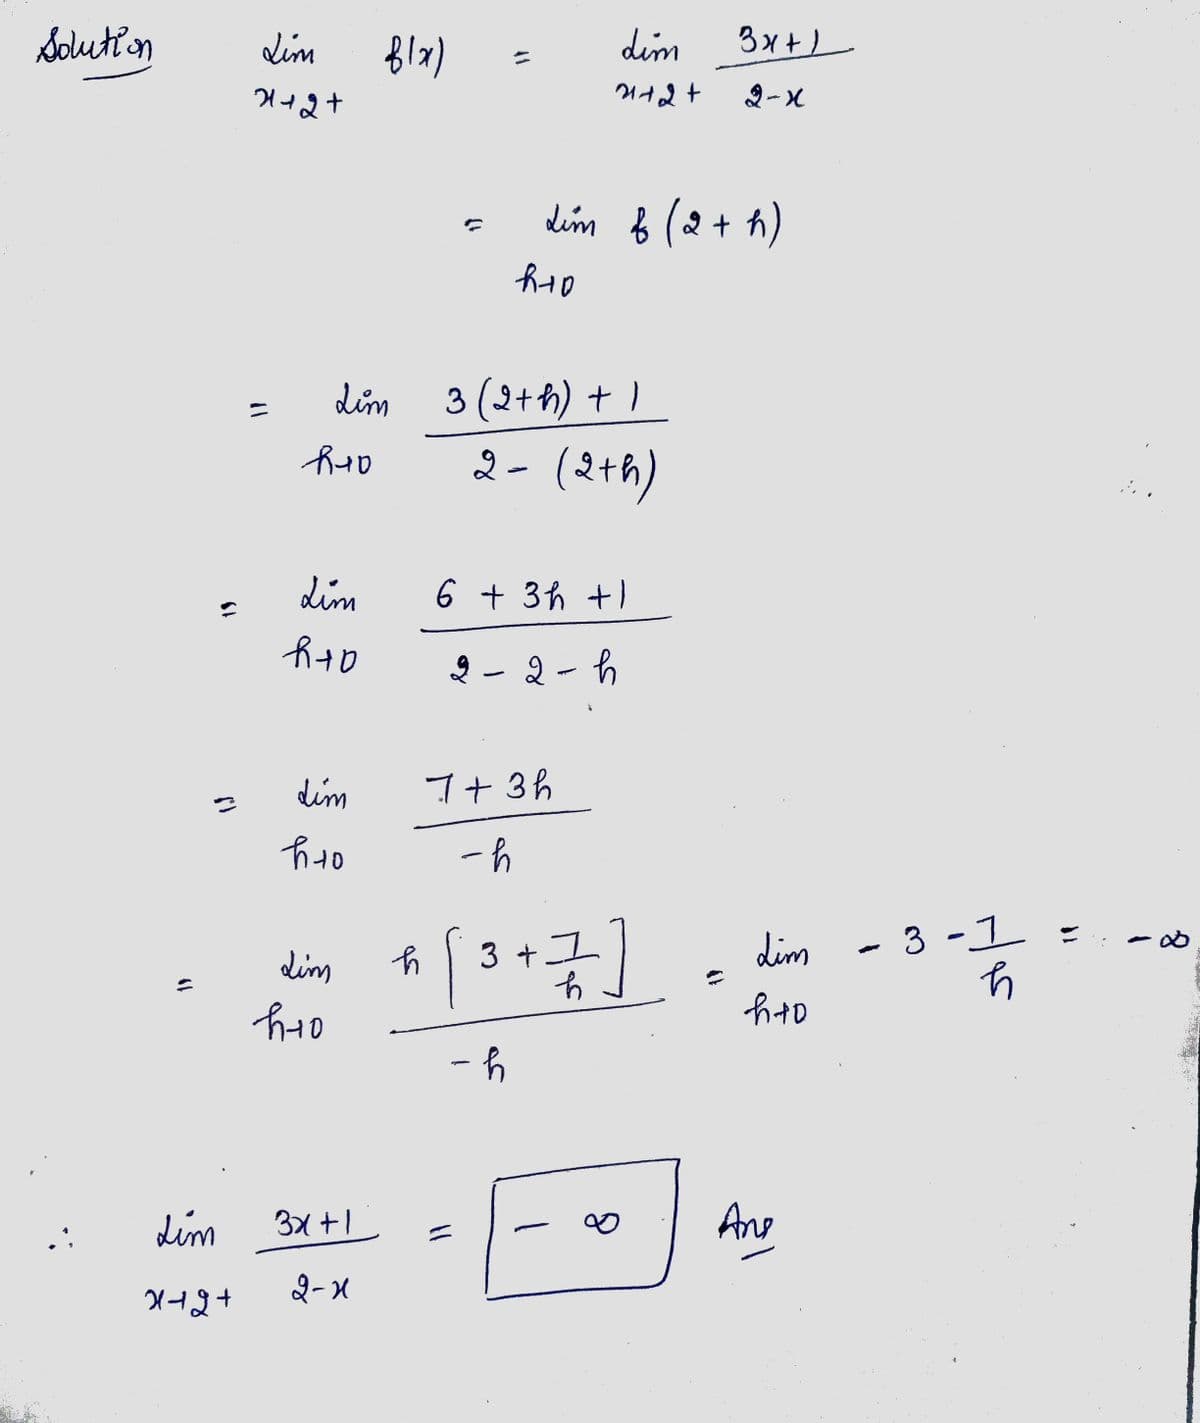 Solution
S
Lim
मनश्न
Lim
2+2+
Ruo
Lim
Lim
h+o
dim
h to
Lim
h+o
f(x)
3x+1
2-x
h
R+D
२
Lim & (2 + h)
3 (2+ h) + 1
2- (2+h)
6 + 3h +1
h
dim
21+2+
2
7+ 3h
-h
-
[ 3 + 1 ]
그
-h
∞0
3x+1
Lim
h+o
Ane
-
عواد
3-1
11
8